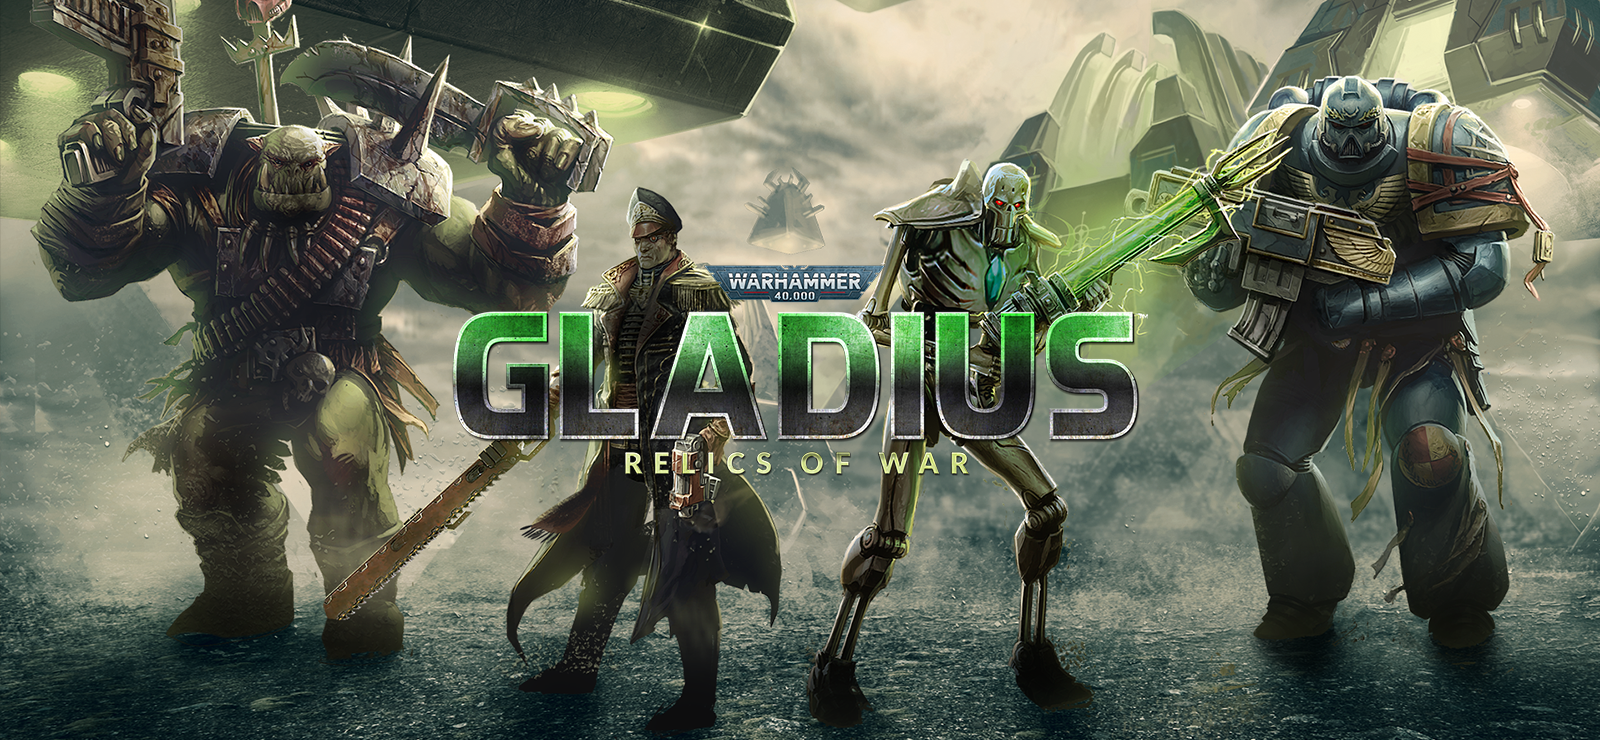 Warhammer 40,000: Gladius - Relics Of War